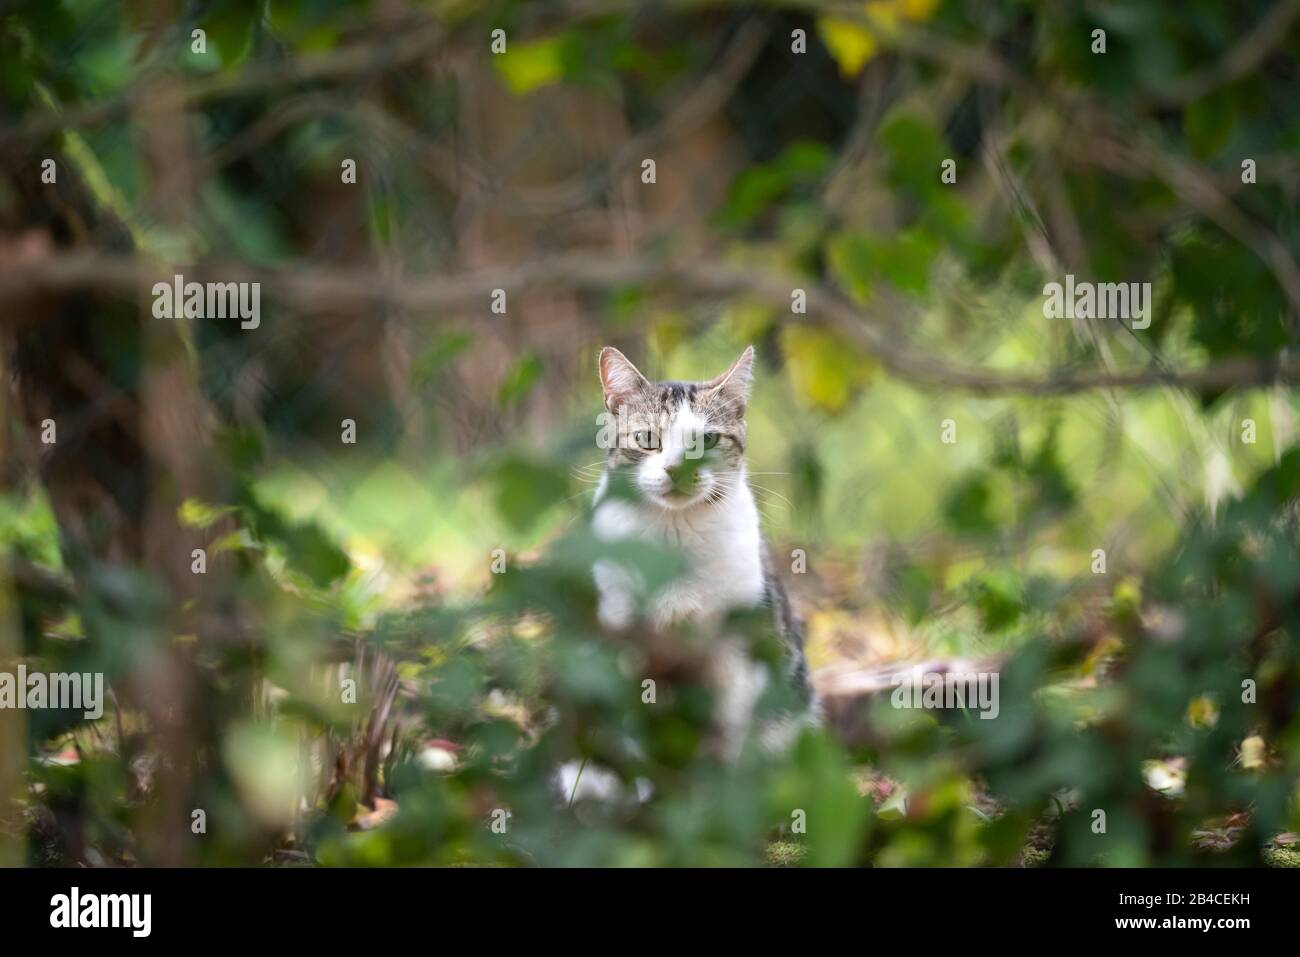 tabby bianco gatto shorthair domestico in piedi dietro la recinzione catena-maglia coperta con piante che guardano la macchina fotografica all'aperto nel cortile posteriore Foto Stock